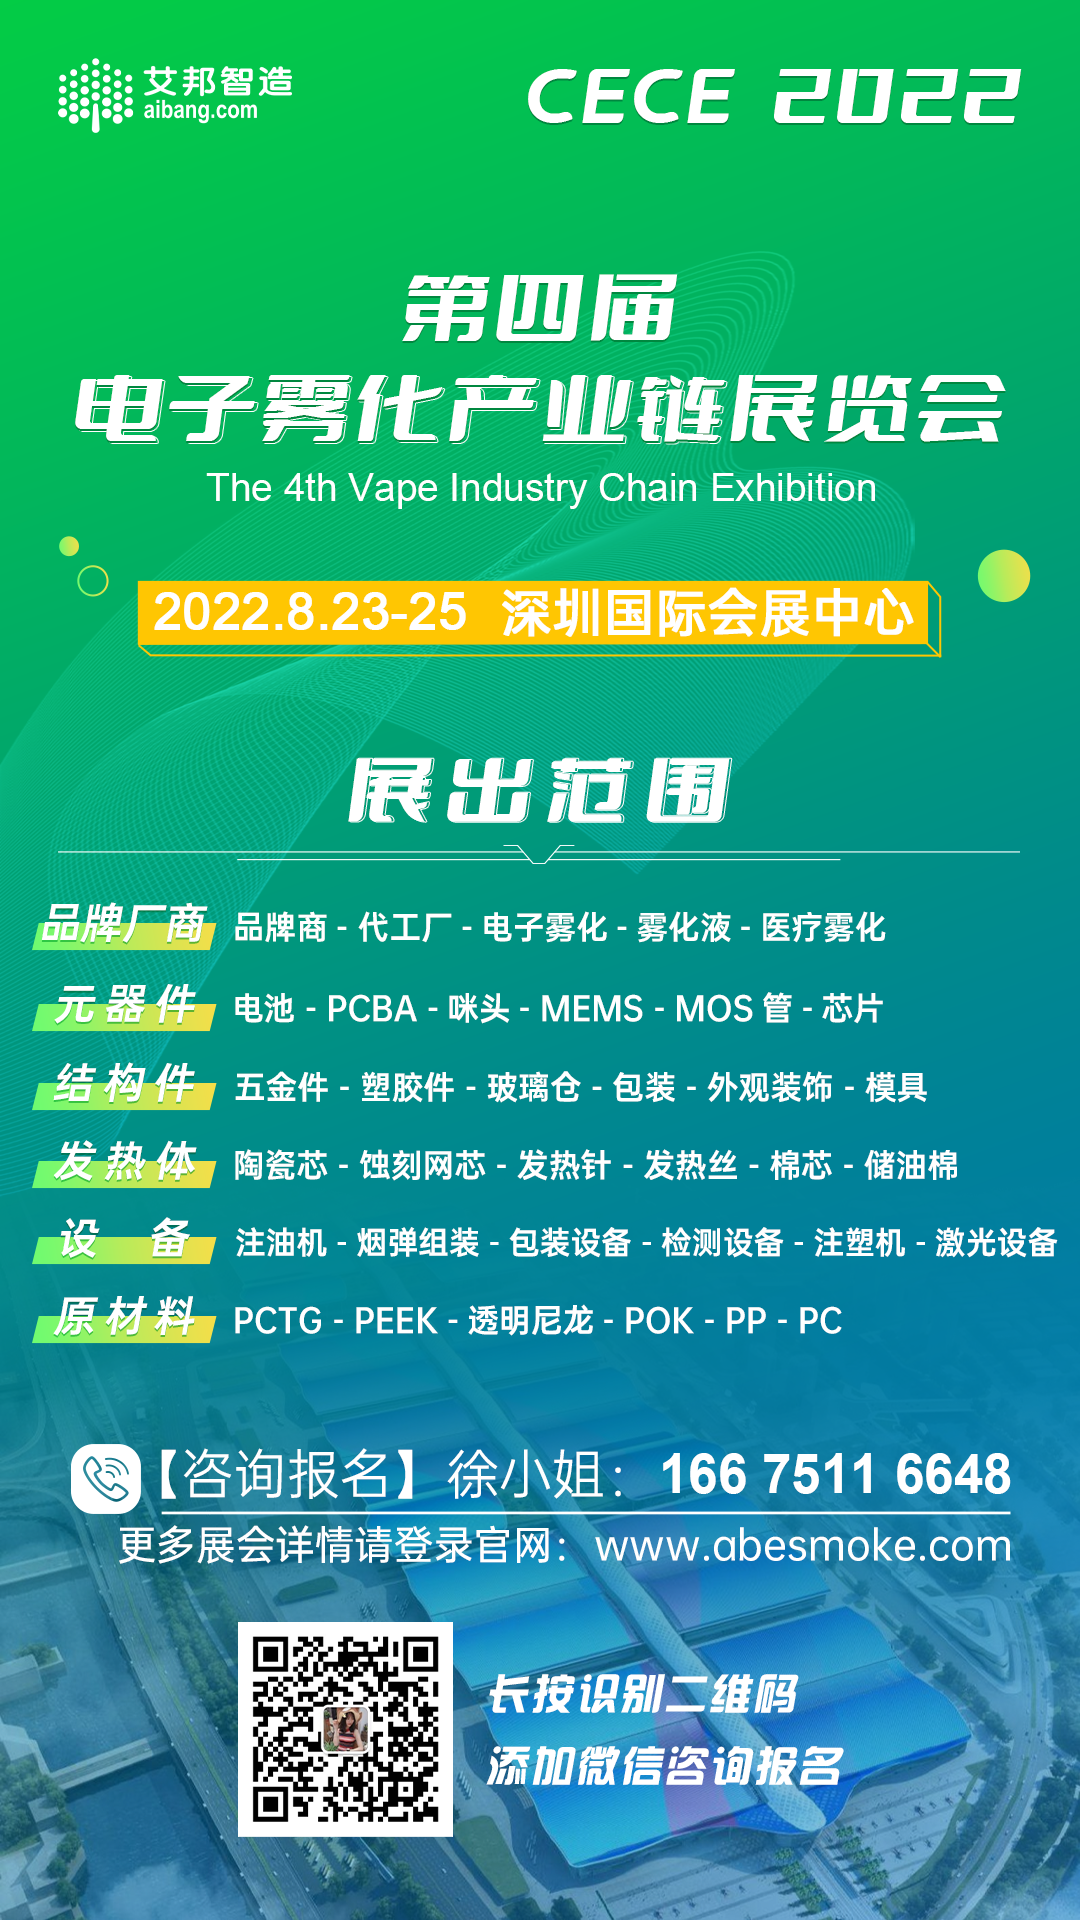 2021年中国电子烟行业市场现状及发展趋势分析